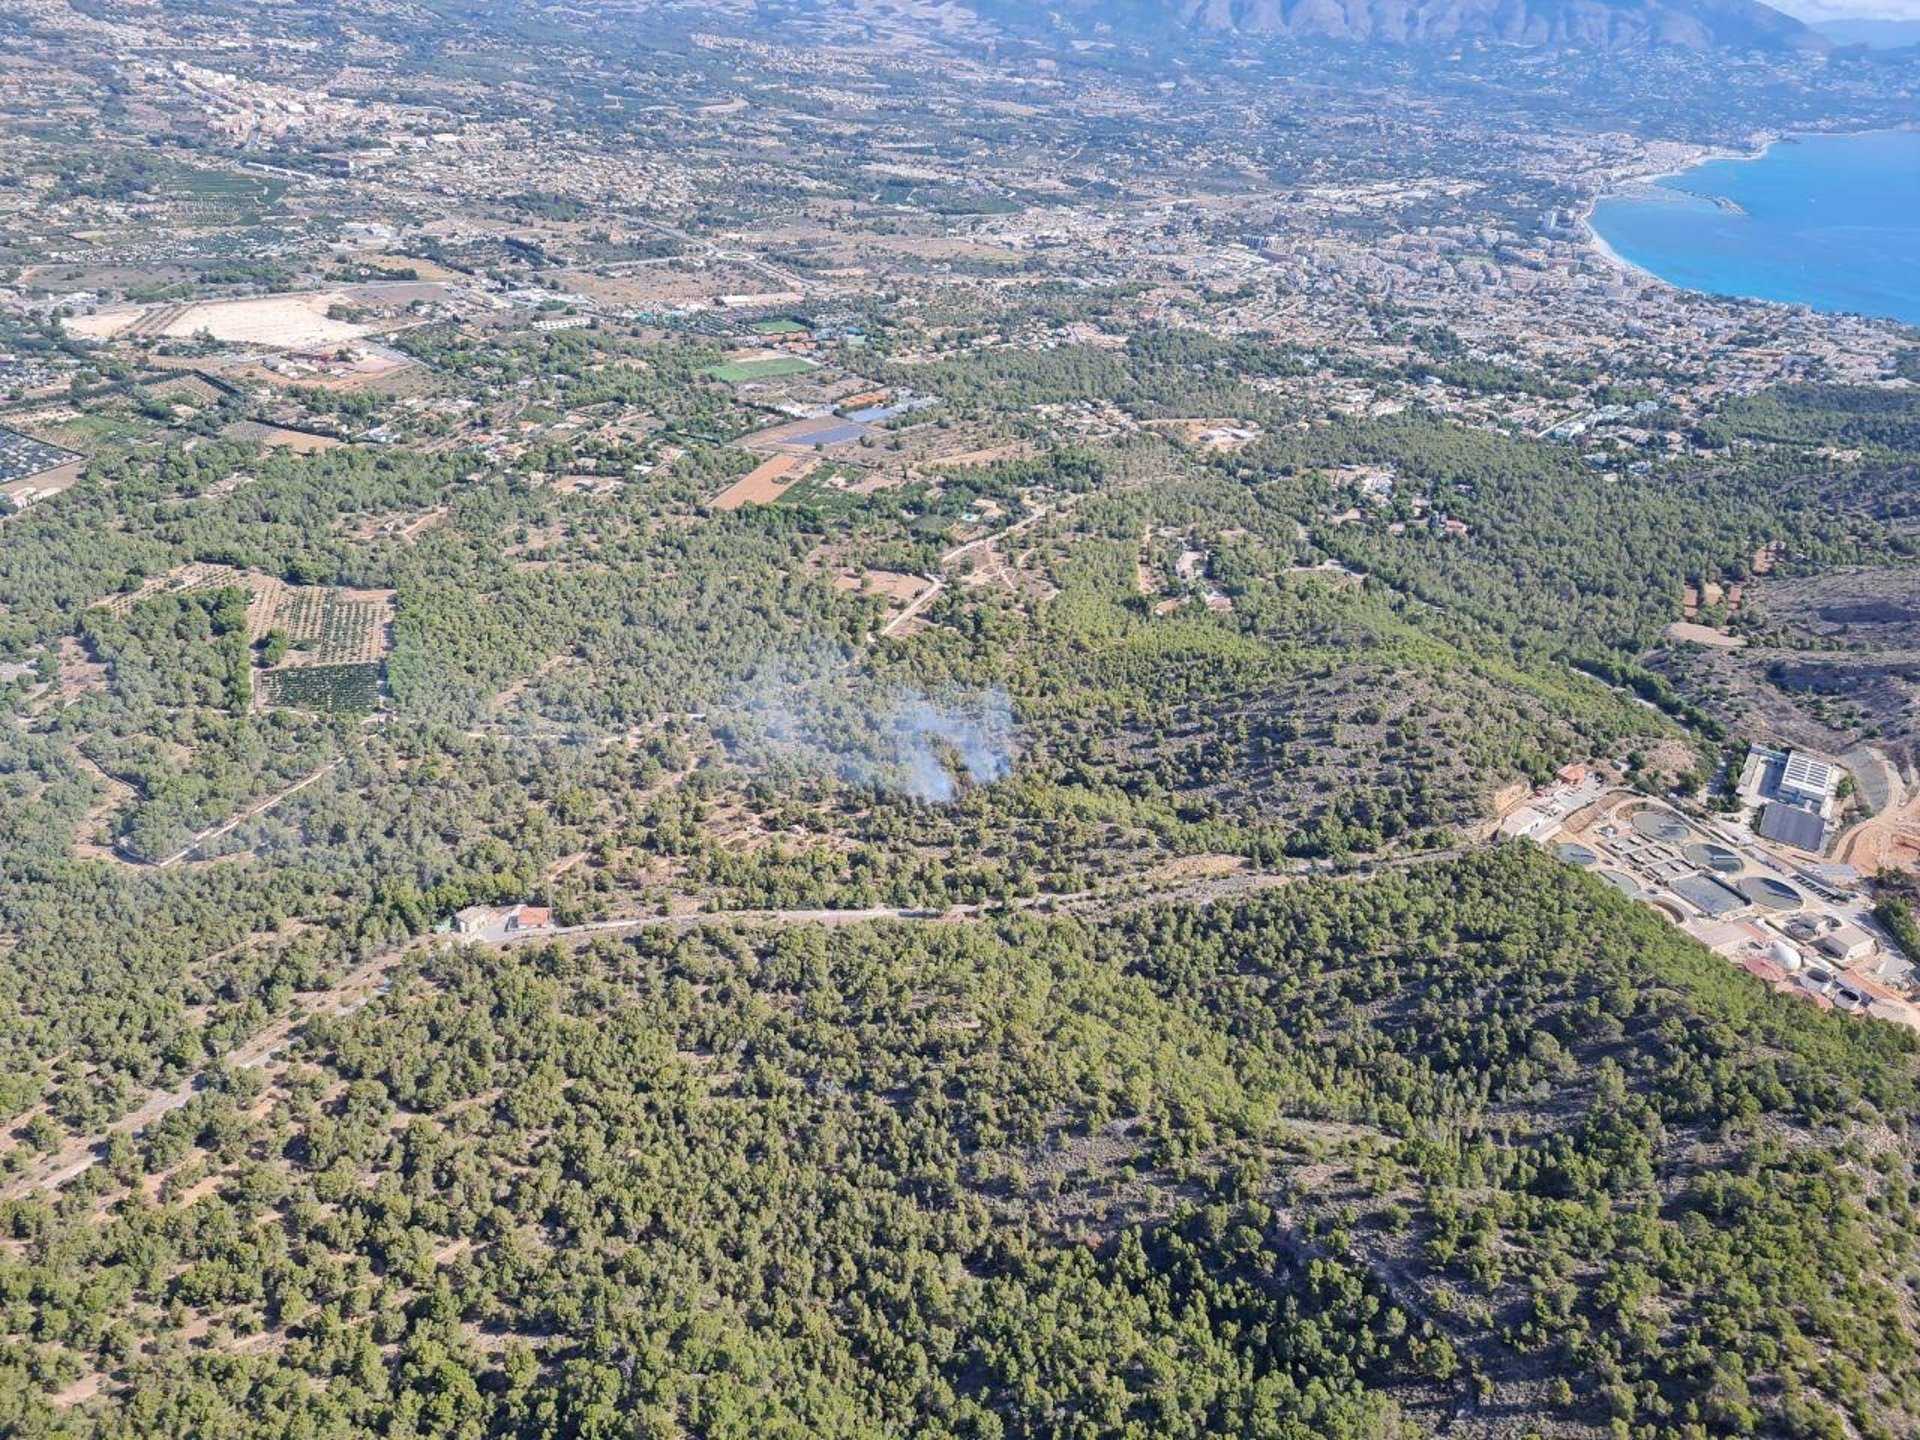 Transición Ecológica analiza la humedad de la vegetación forestal a partir de imágenes de satélite